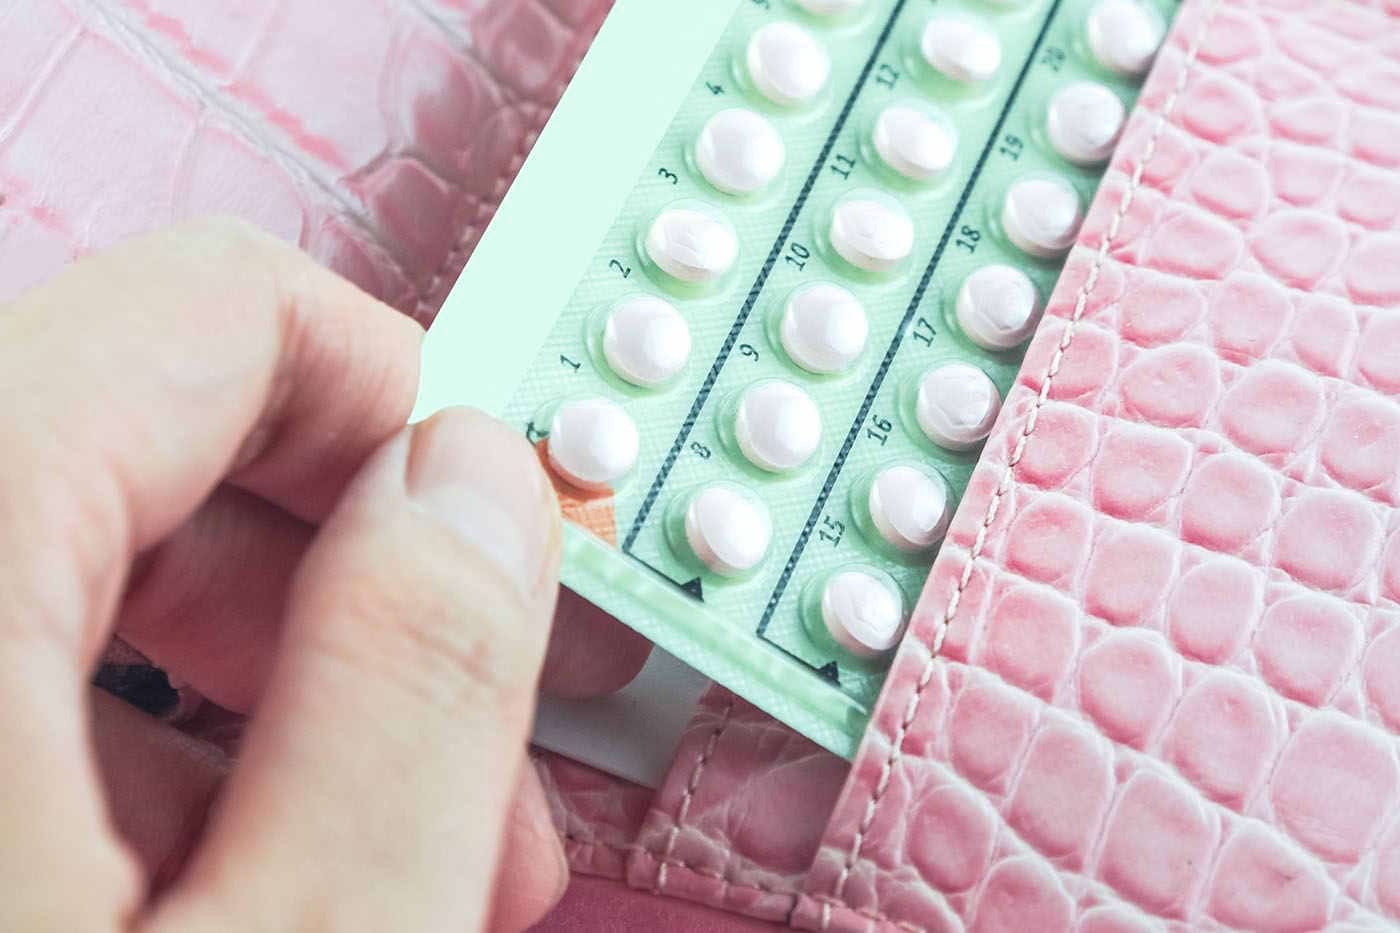 Cancerul de sân, corelat cu administrarea de anticoncepționale?